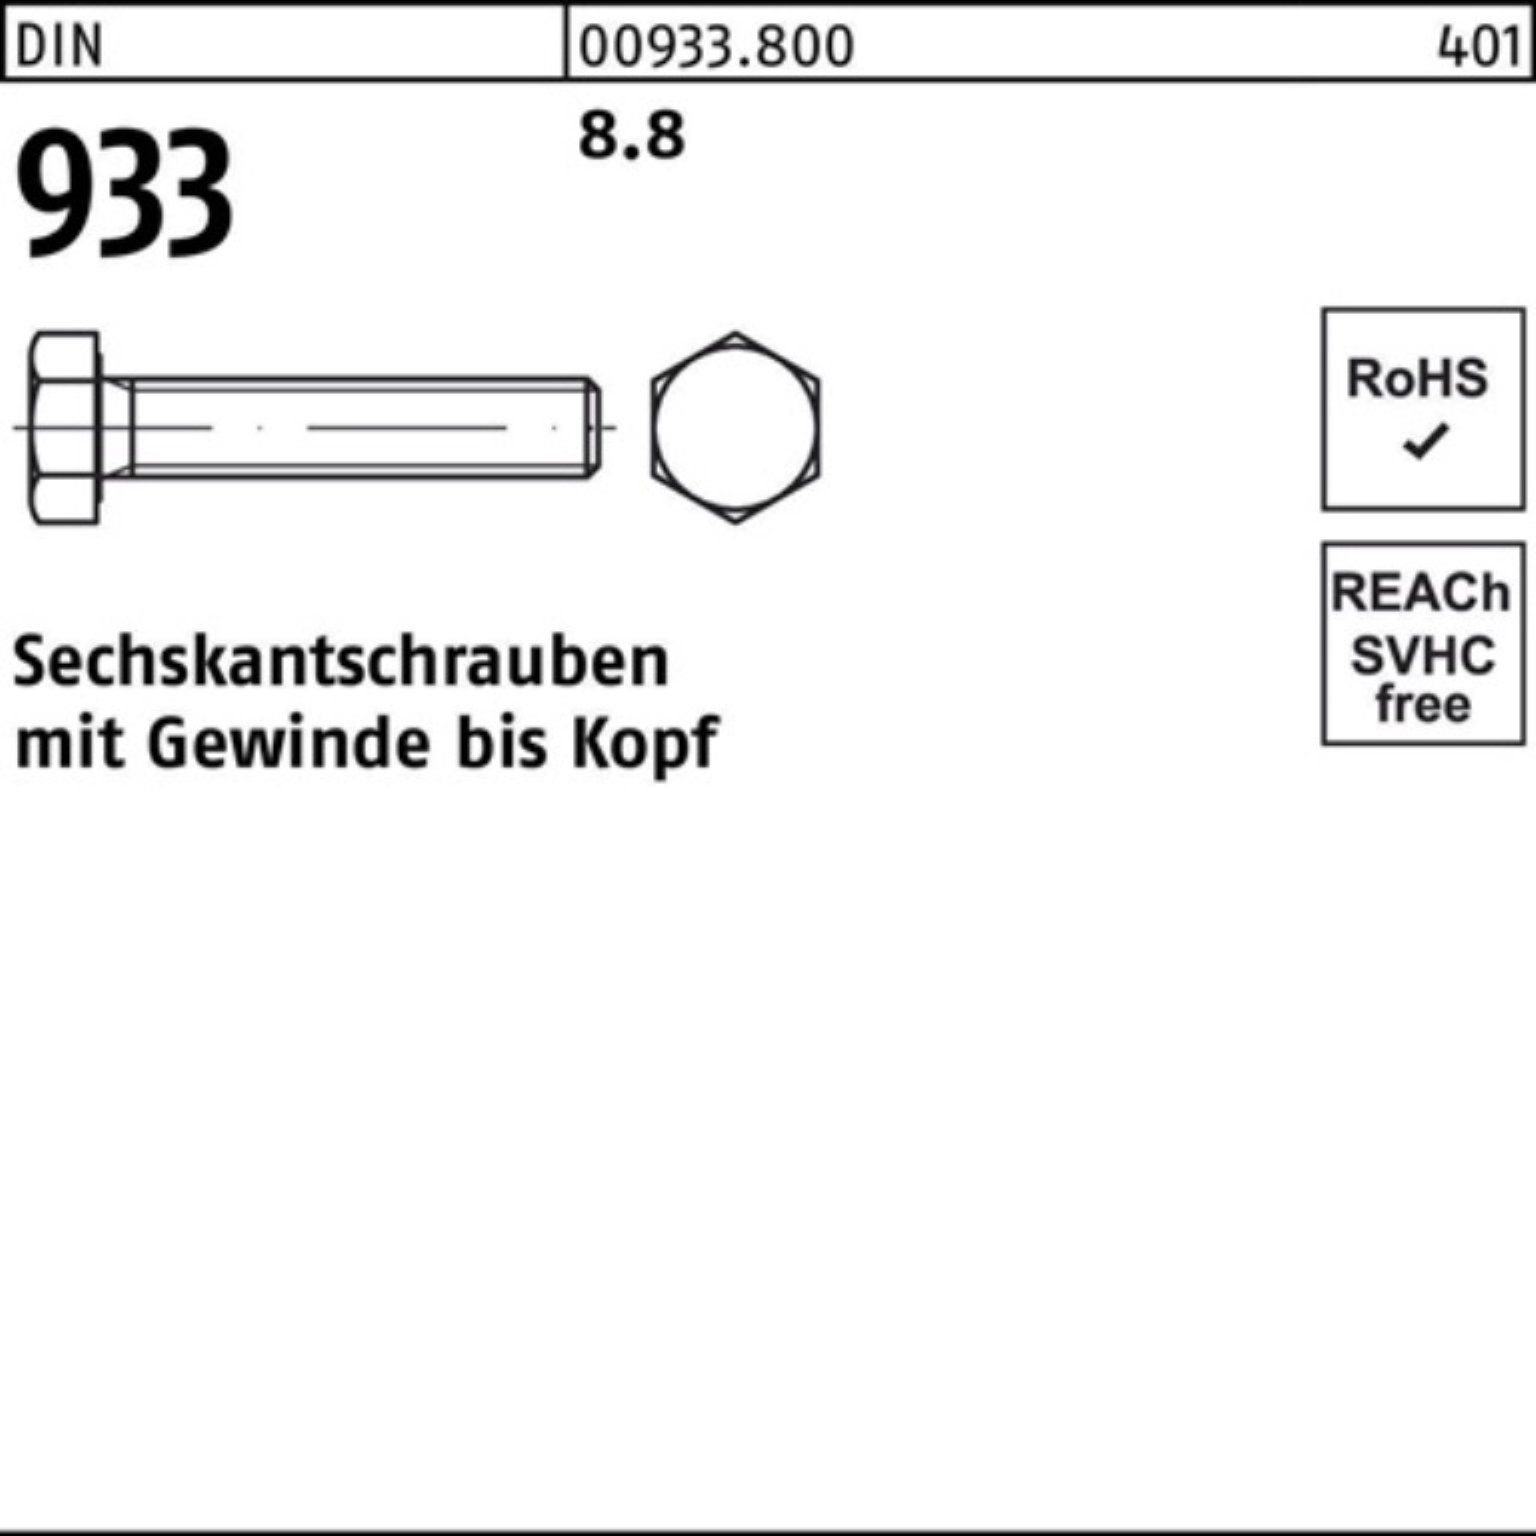 Reyher Sechskantschraube M18x Sechskantschraube 933 Pack Stück DIN 8.8 VG 933 DIN 100er 45 50